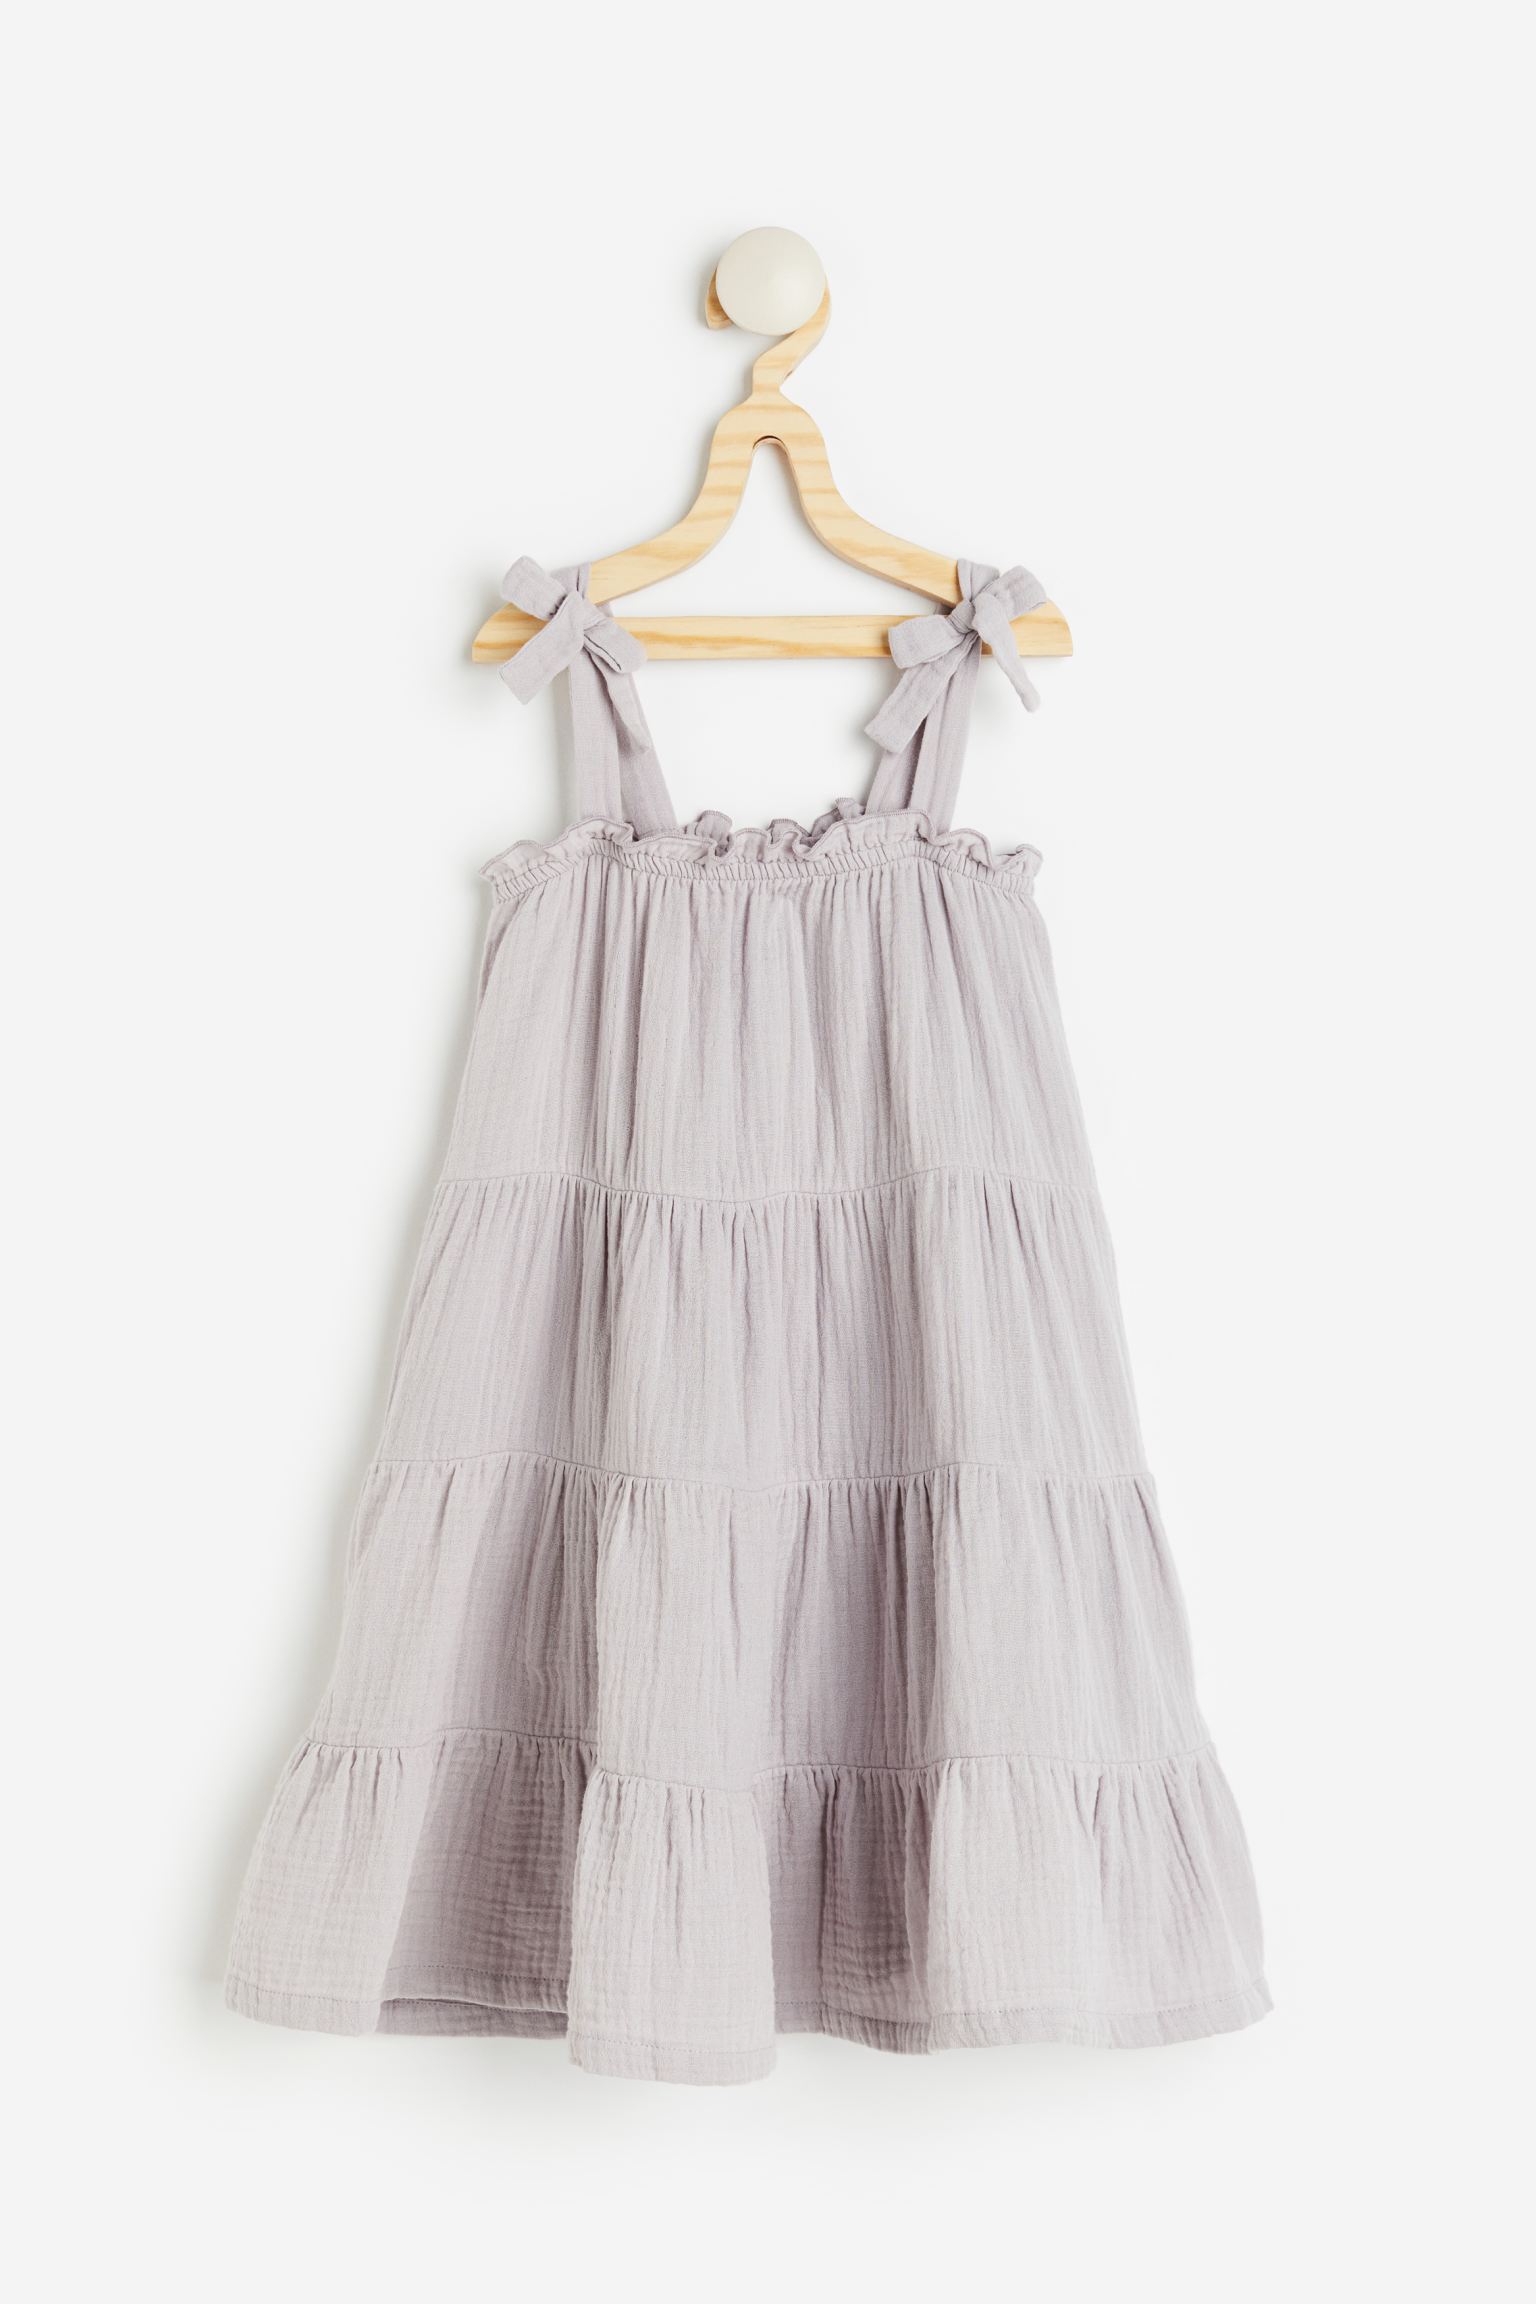 Многоярусное муслиновое платье H&M для девочек 98 лиловый (доставка из-за рубежа)